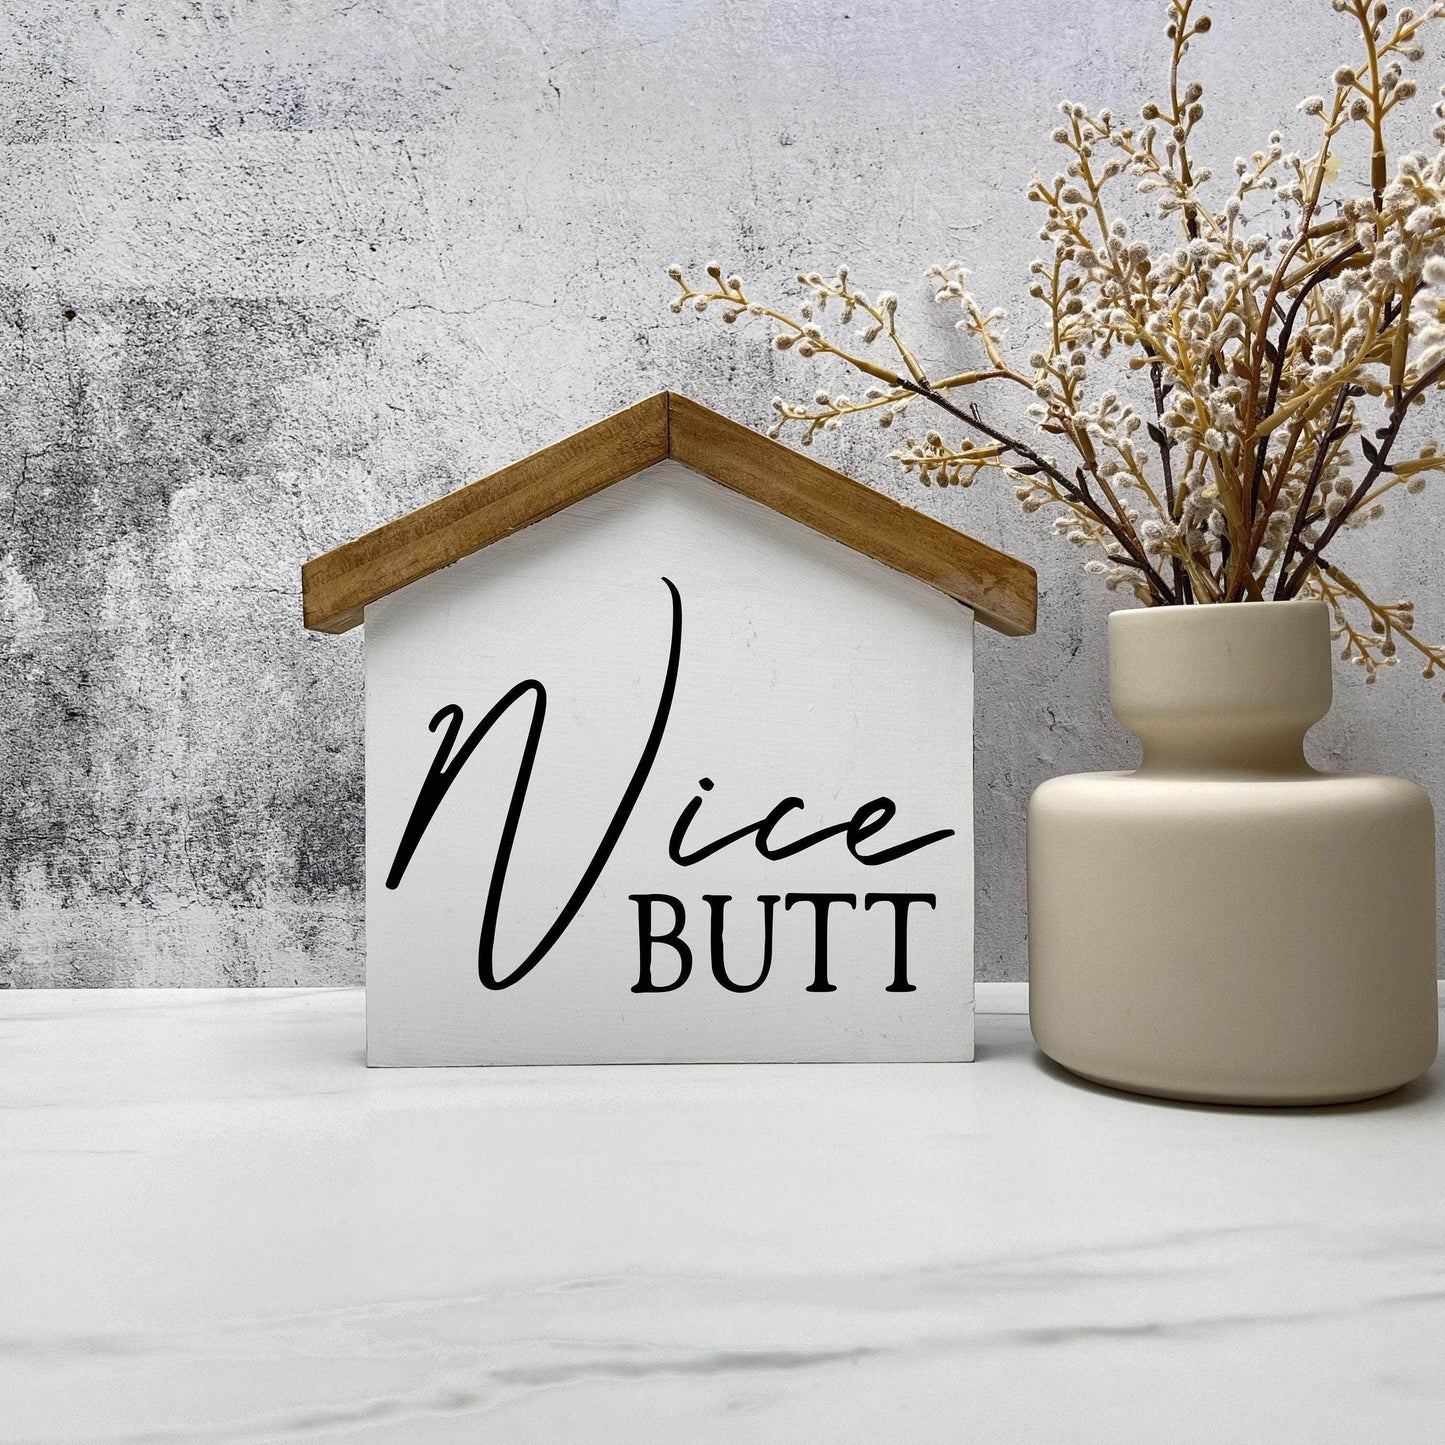 Nice Butt Bathroom house wood sign decor